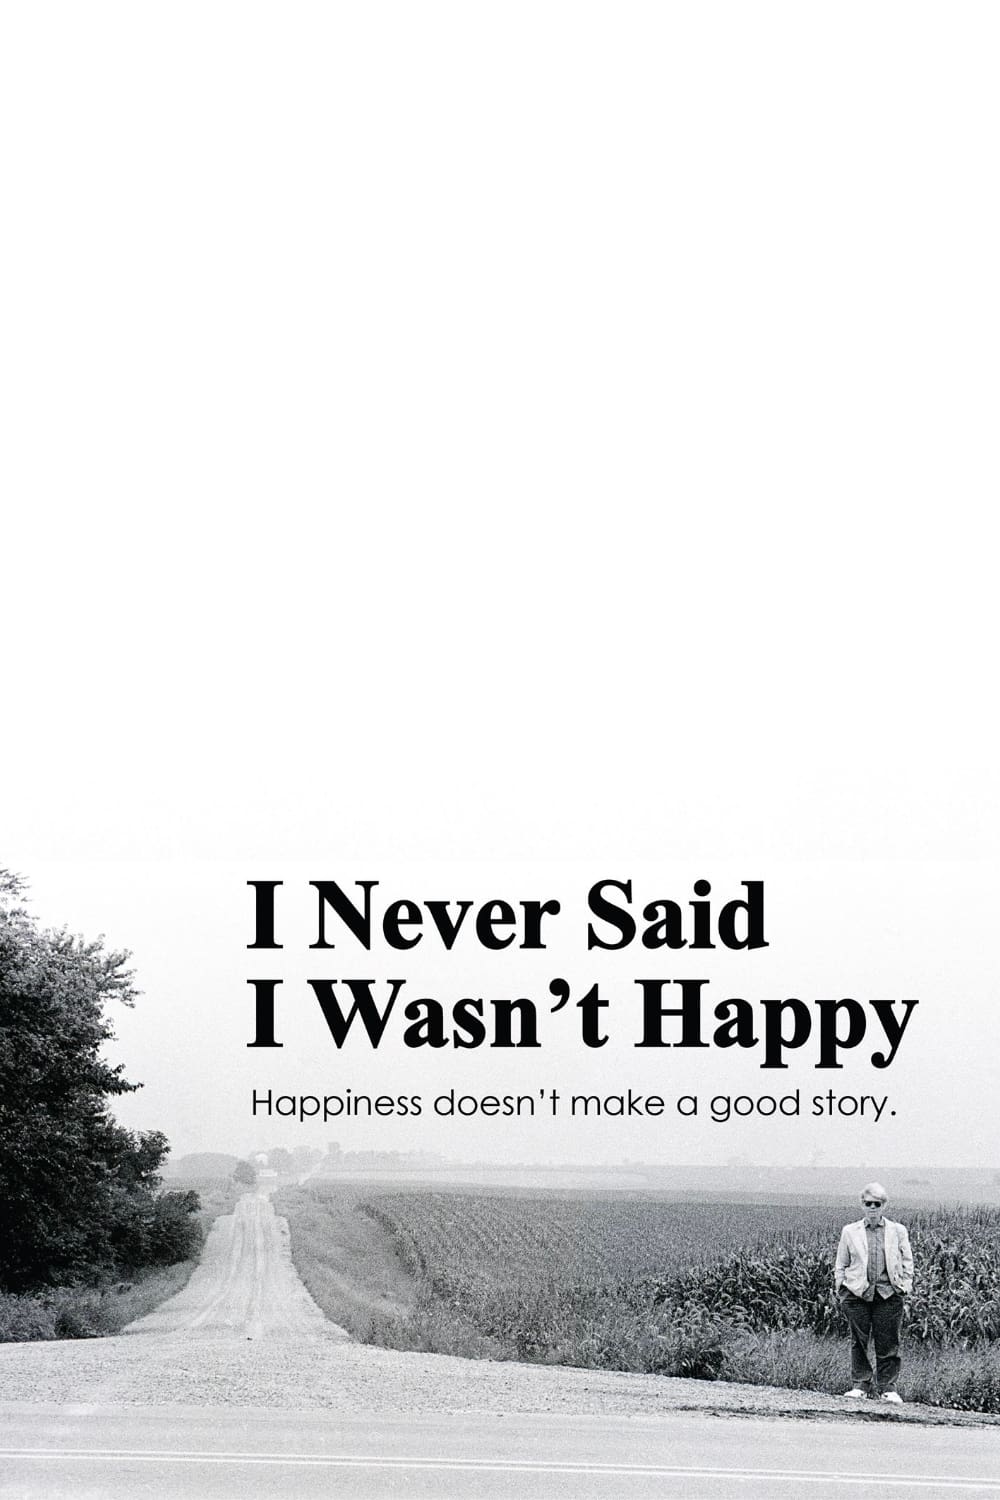 I Never Said I Wasn't Happy